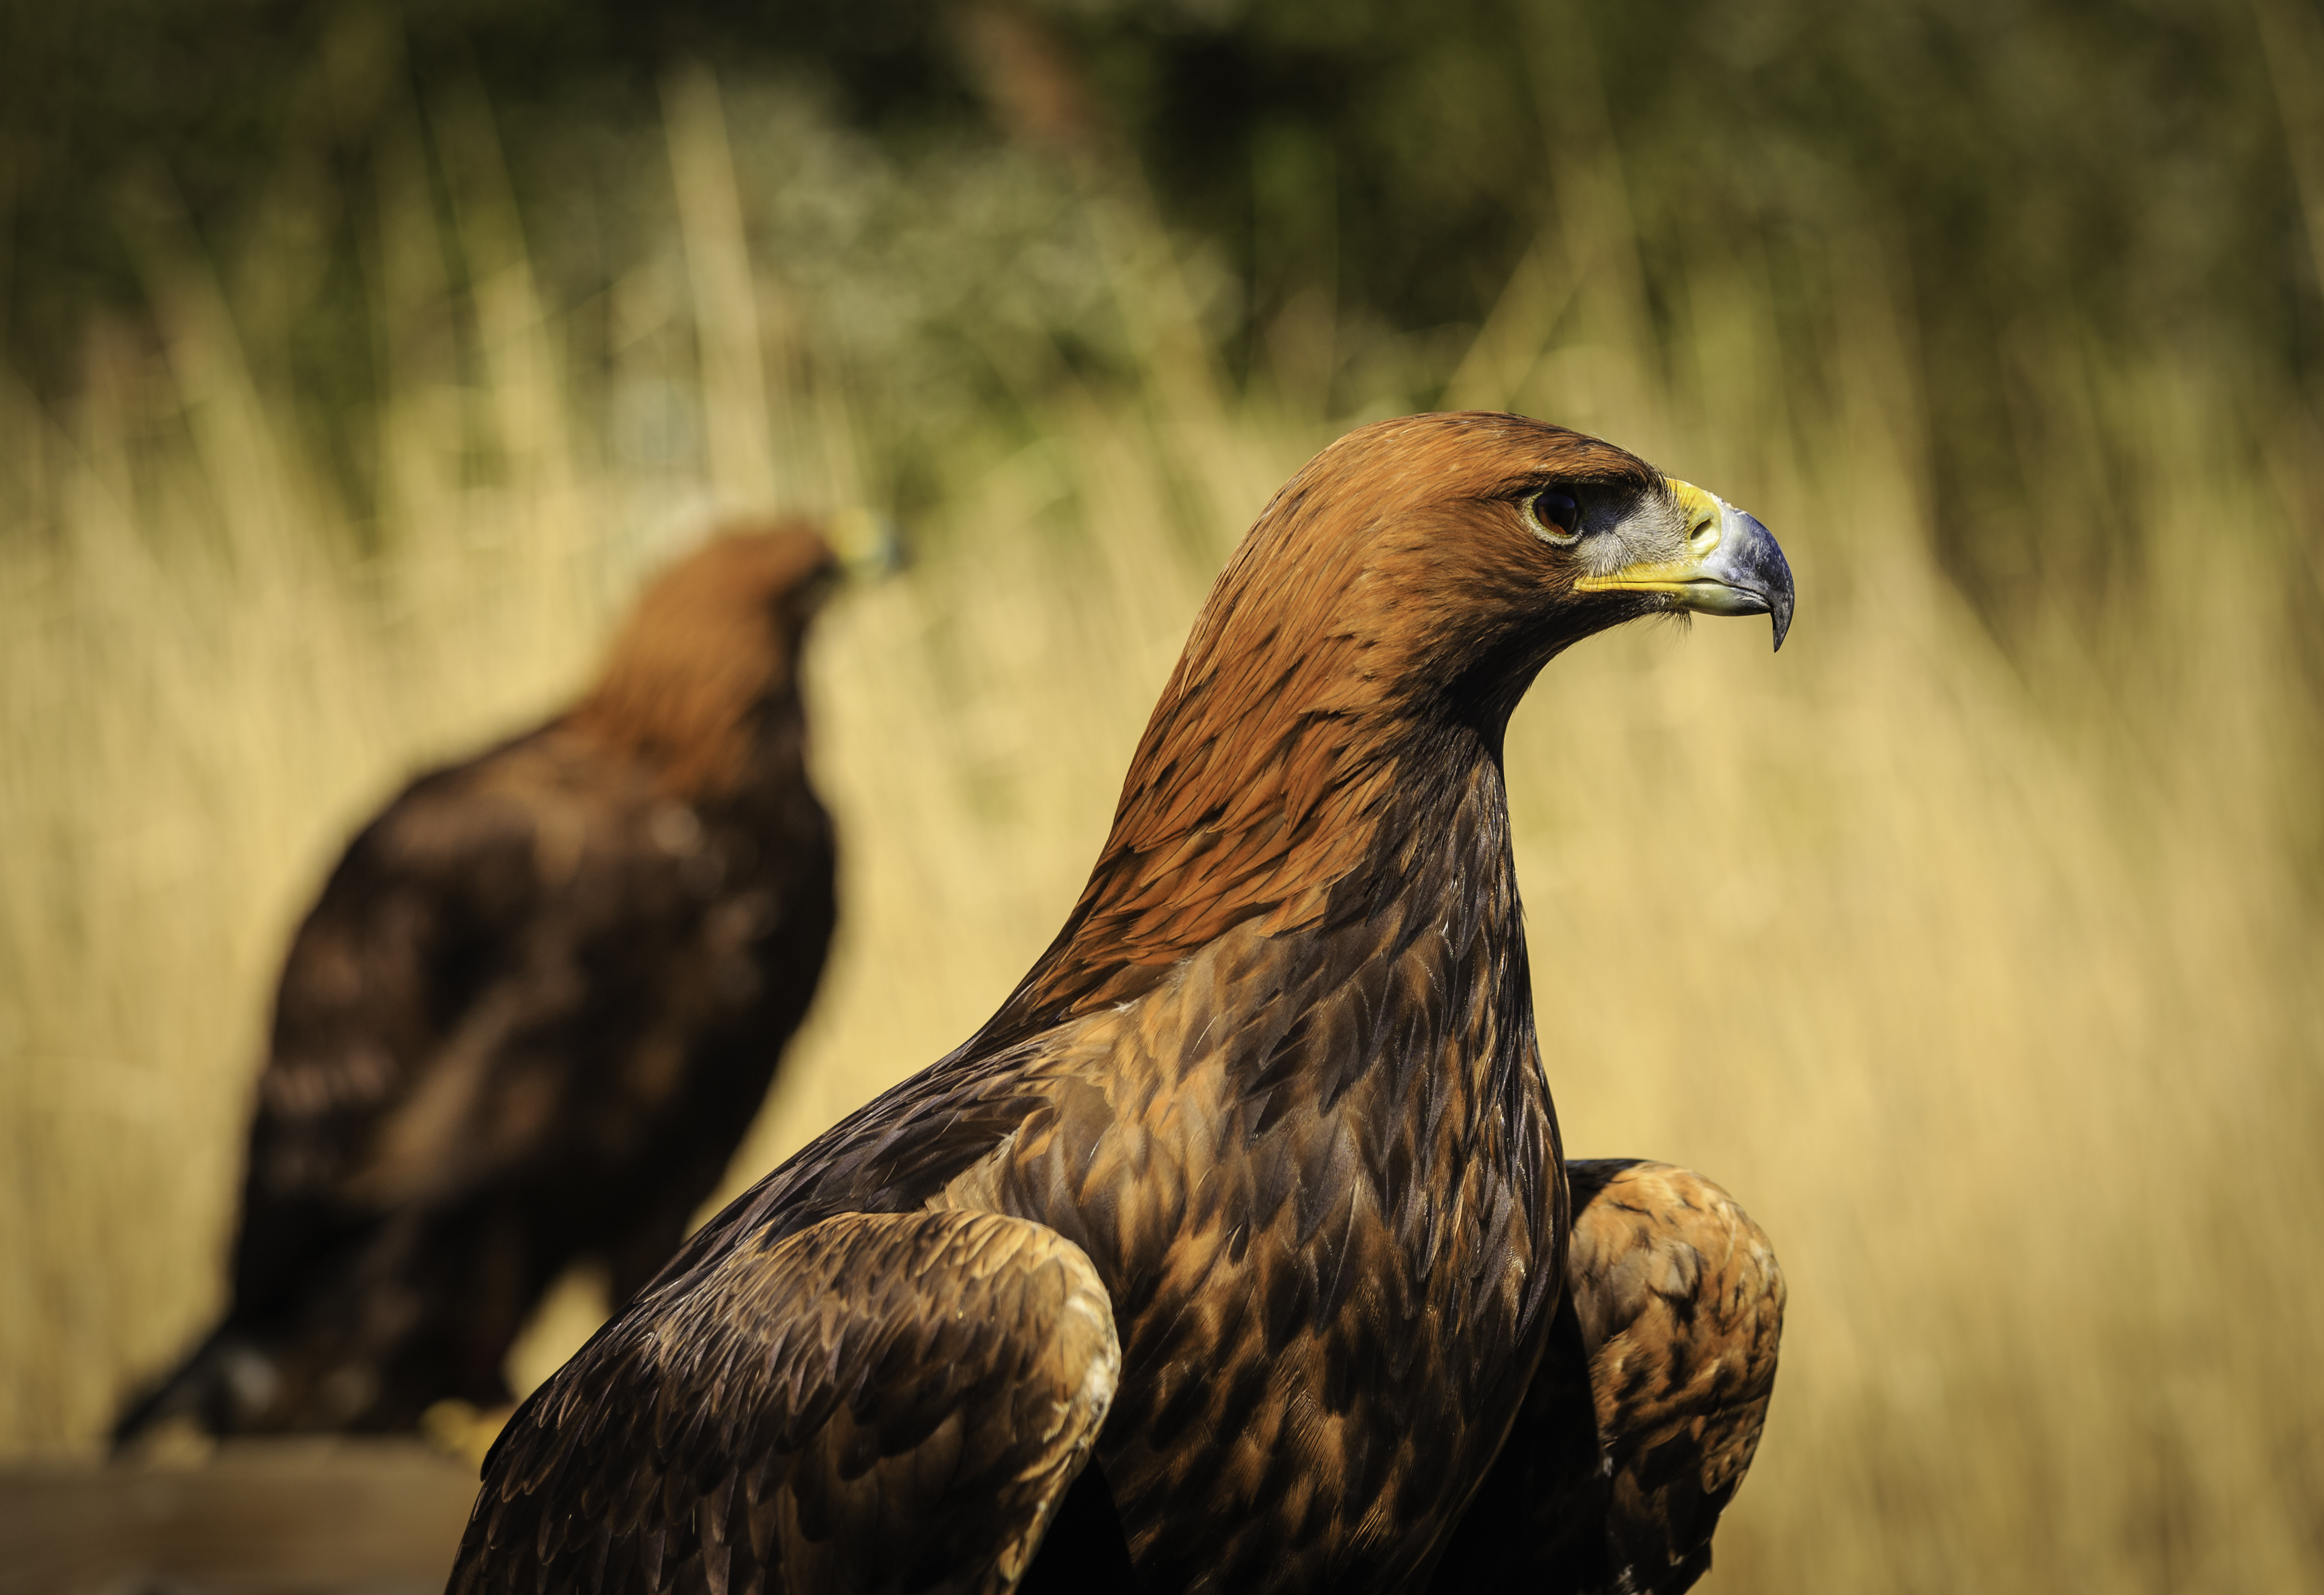 Animal Golden Eagle HD Wallpaper | Background Image